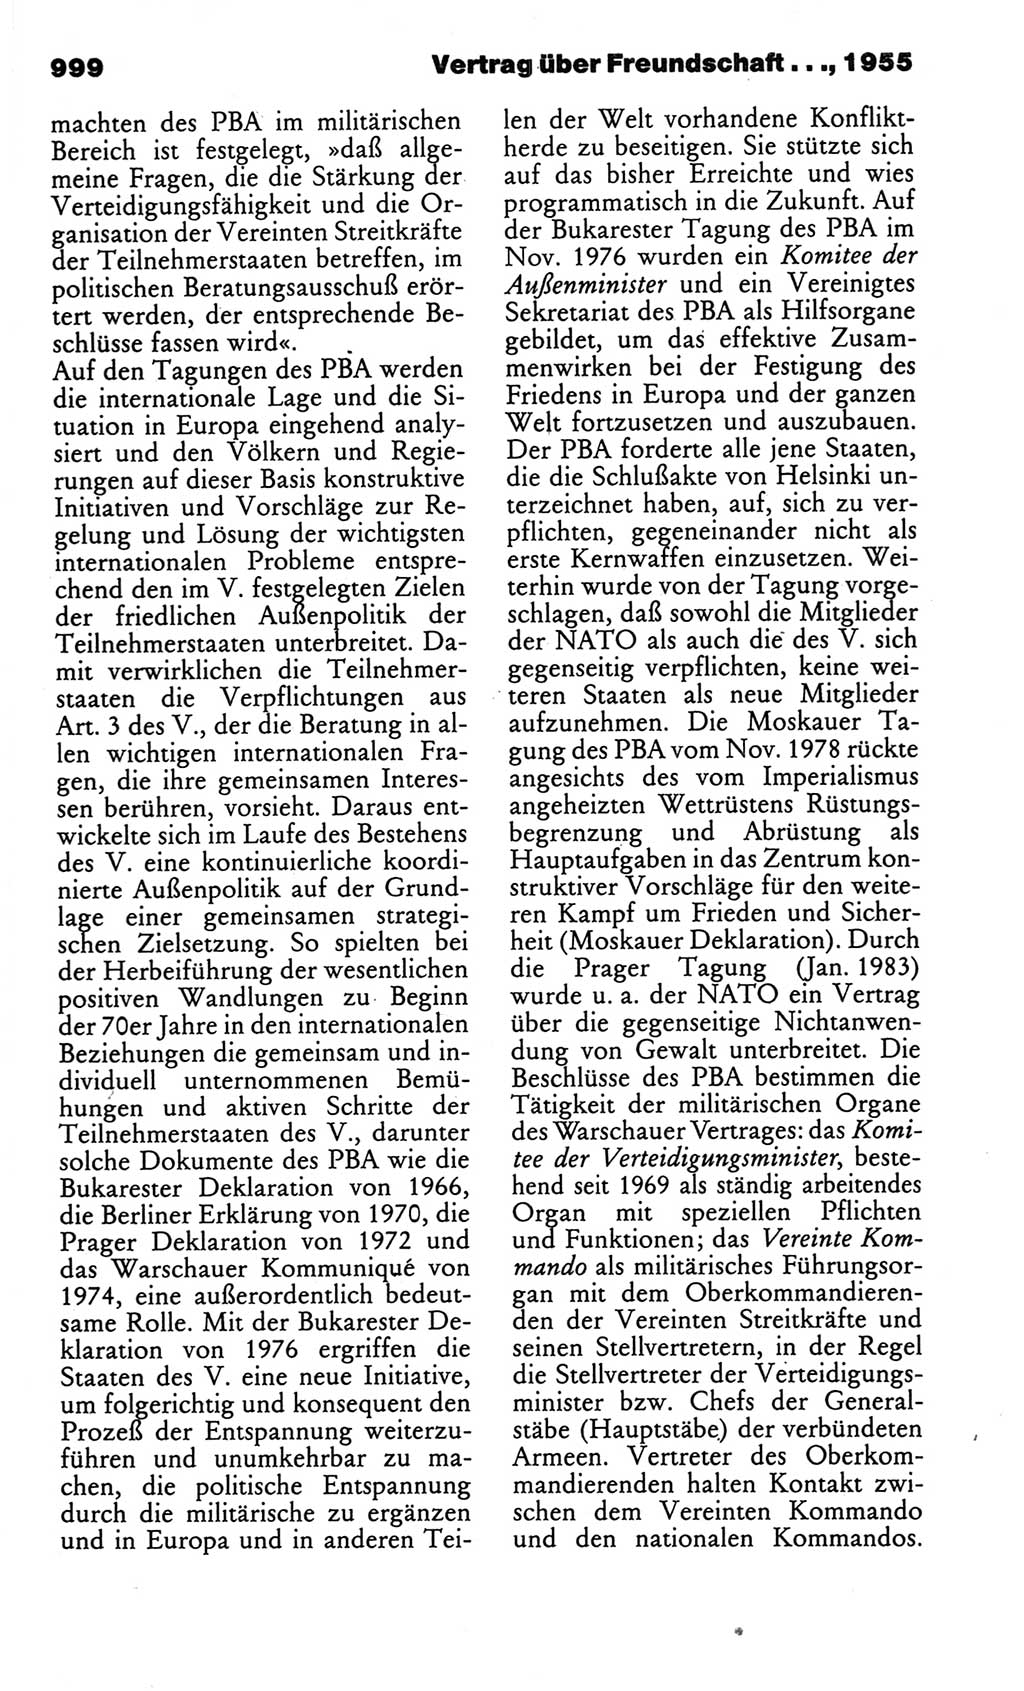 Kleines politisches Wörterbuch [Deutsche Demokratische Republik (DDR)] 1986, Seite 999 (Kl. pol. Wb. DDR 1986, S. 999)